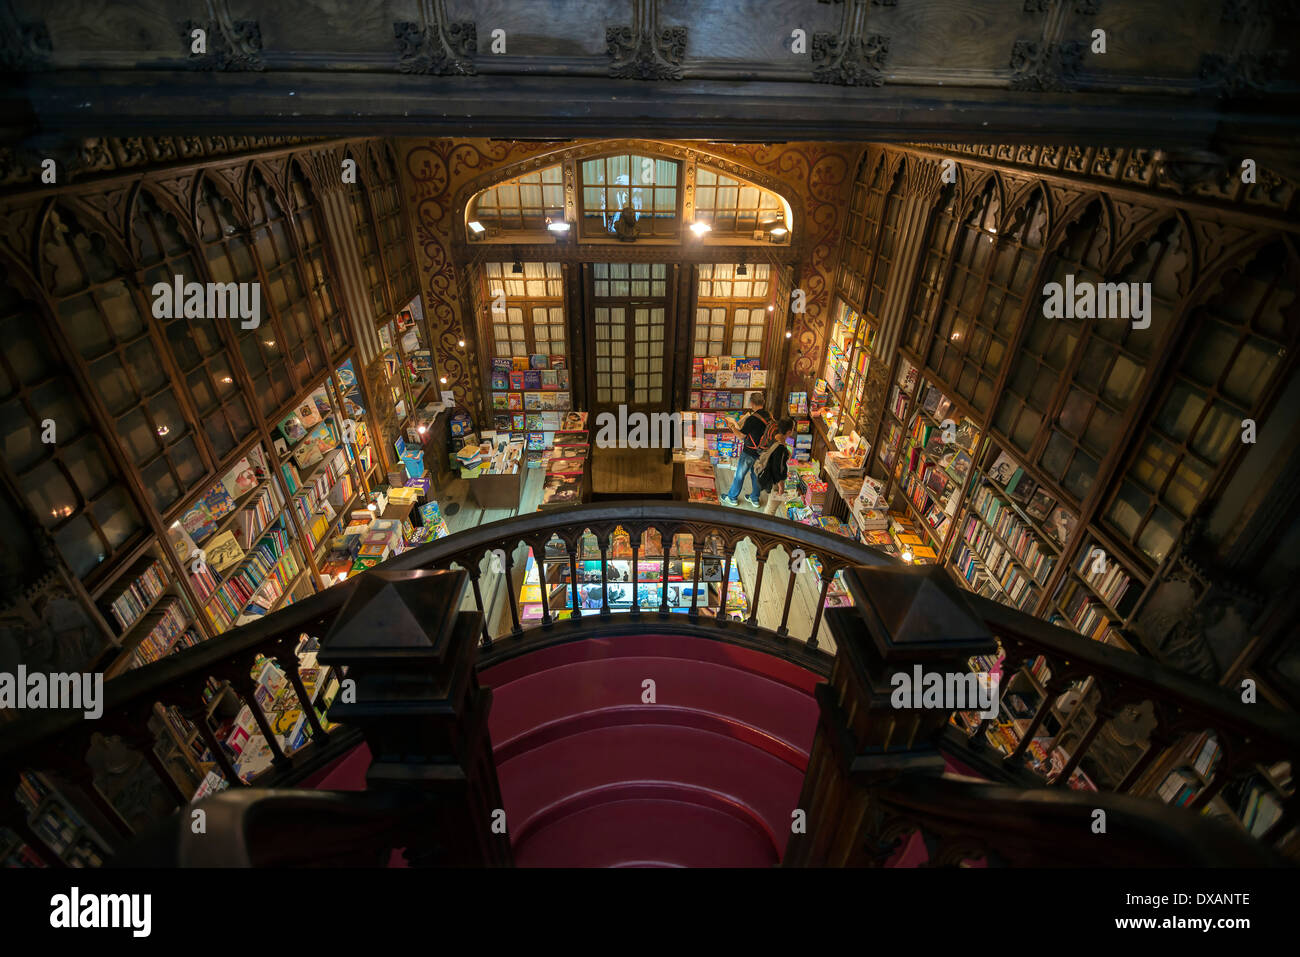 PORTO, Portogallo - 3 Marzo 2014: Interno del famoso bookstore in Porto Portogallo chiamato Livraria Lello Irmão Foto Stock